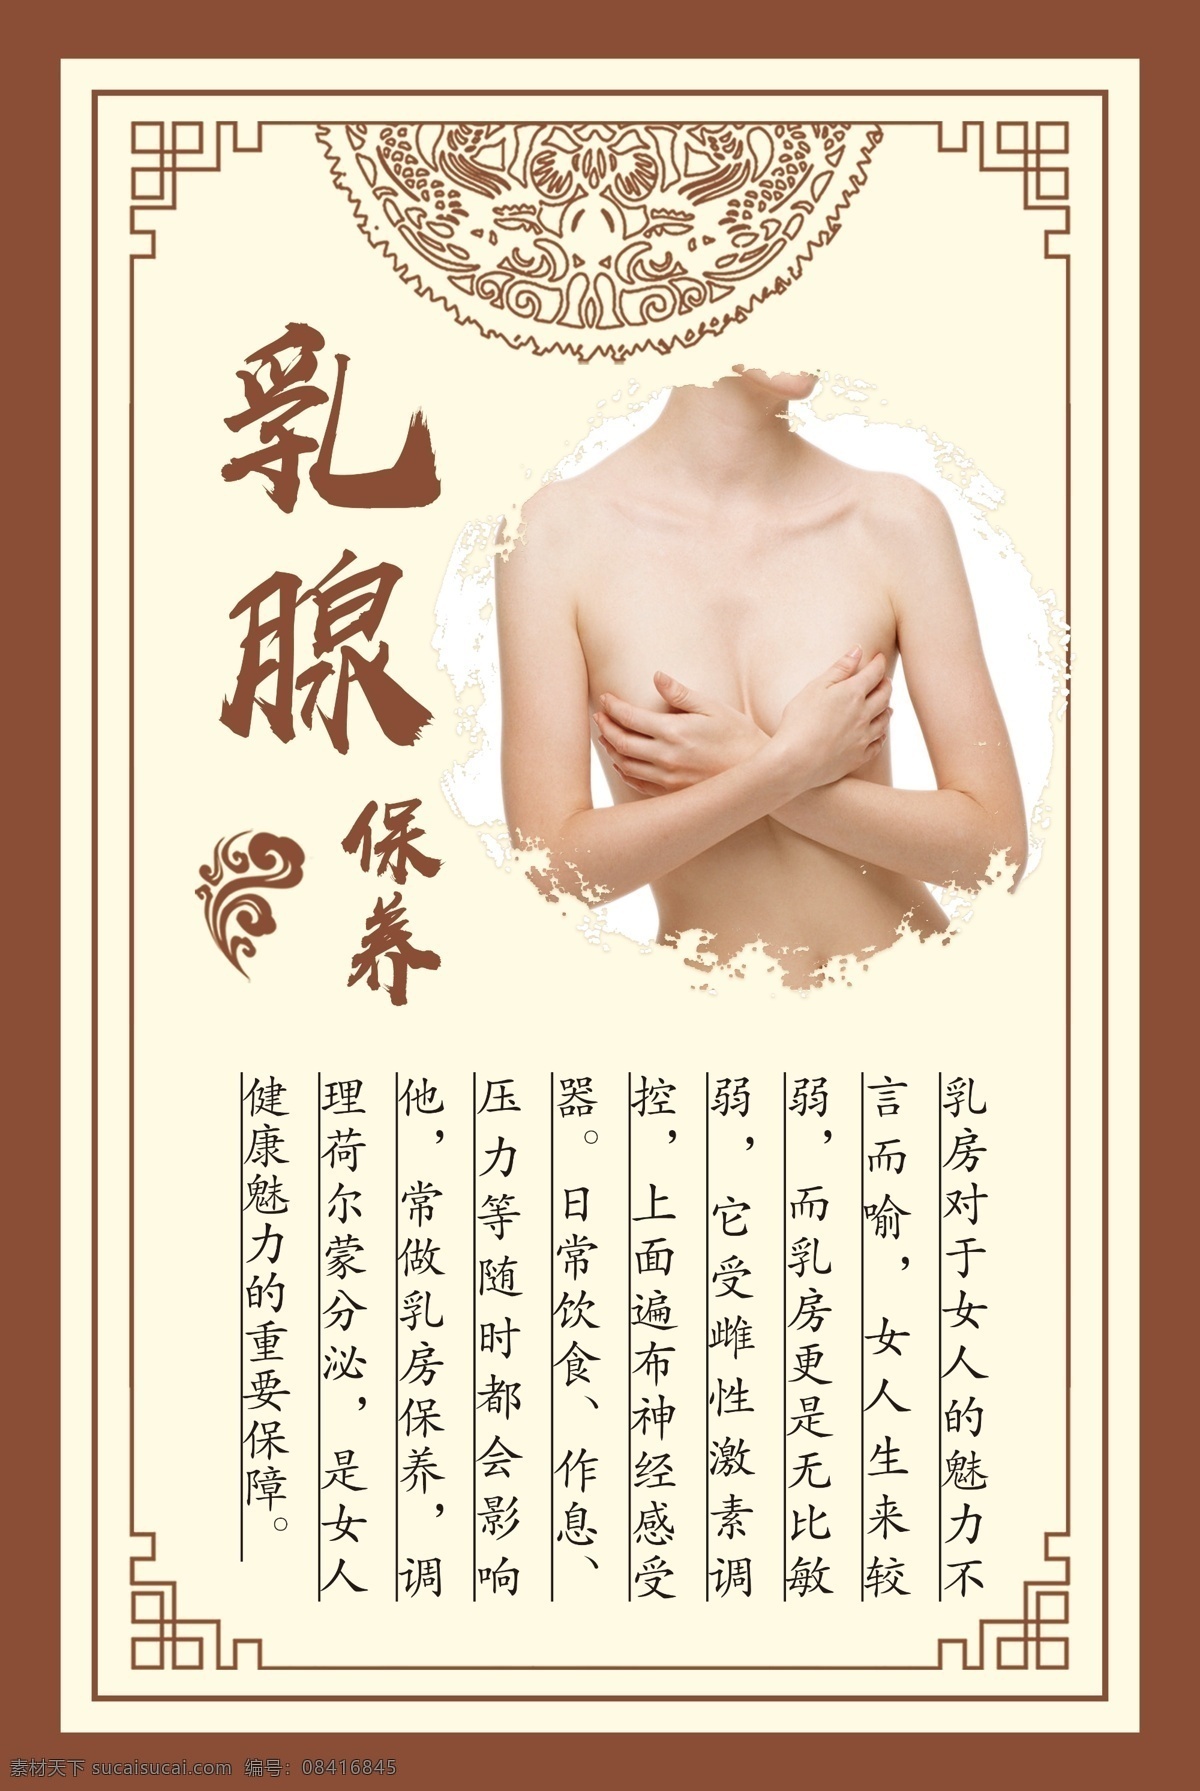 乳腺 保养 护理 海报 女性 养生 保健 胸部